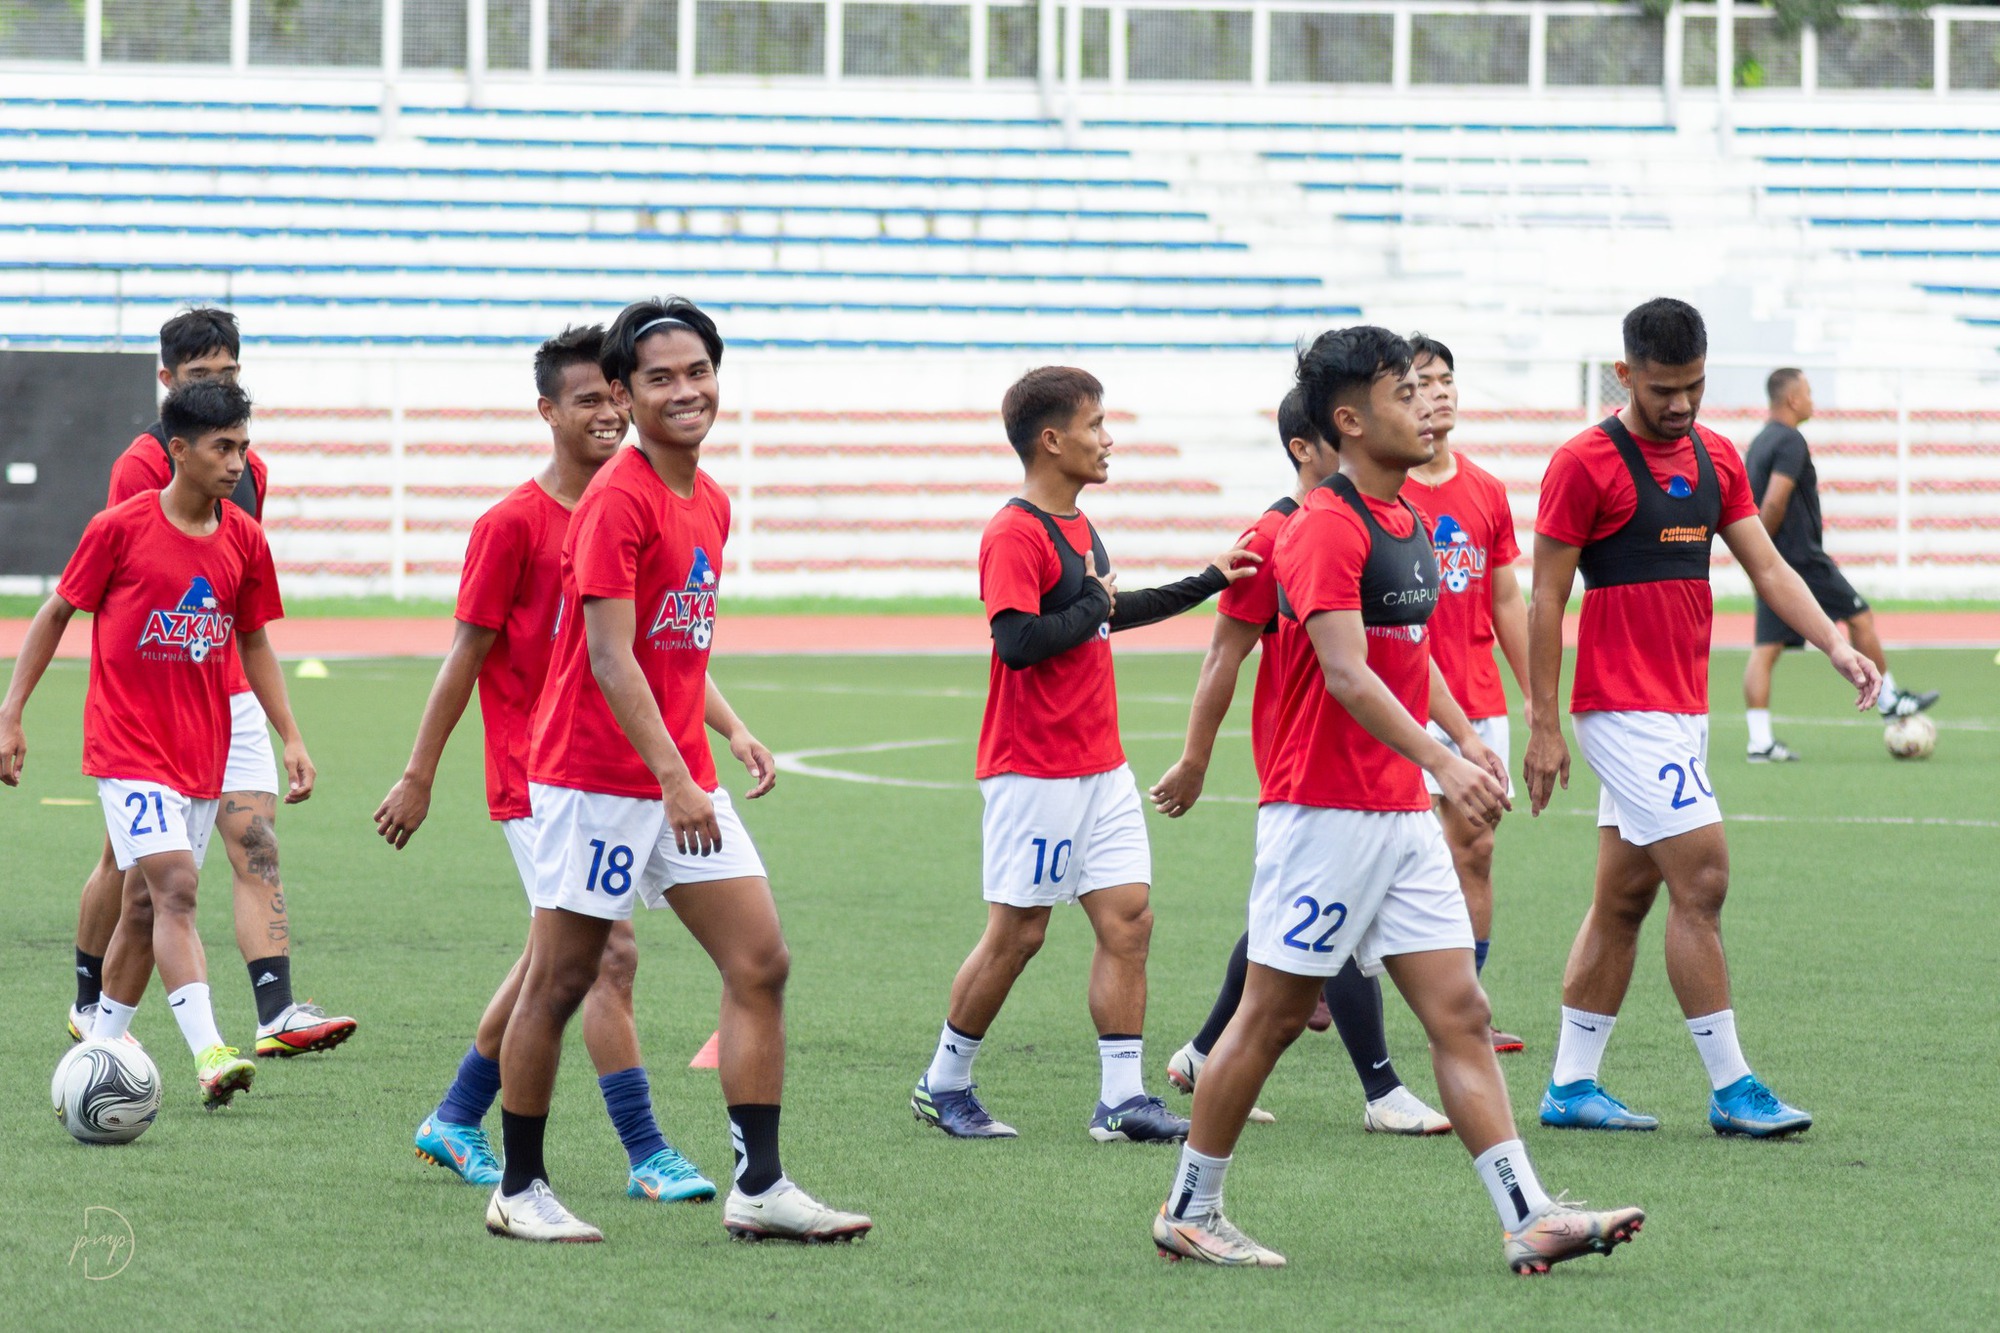 Đội tuyển Philippines chia thành 3 nhóm đến Hà Nội chuẩn bị đấu tuyển Việt Nam - Ảnh 1.